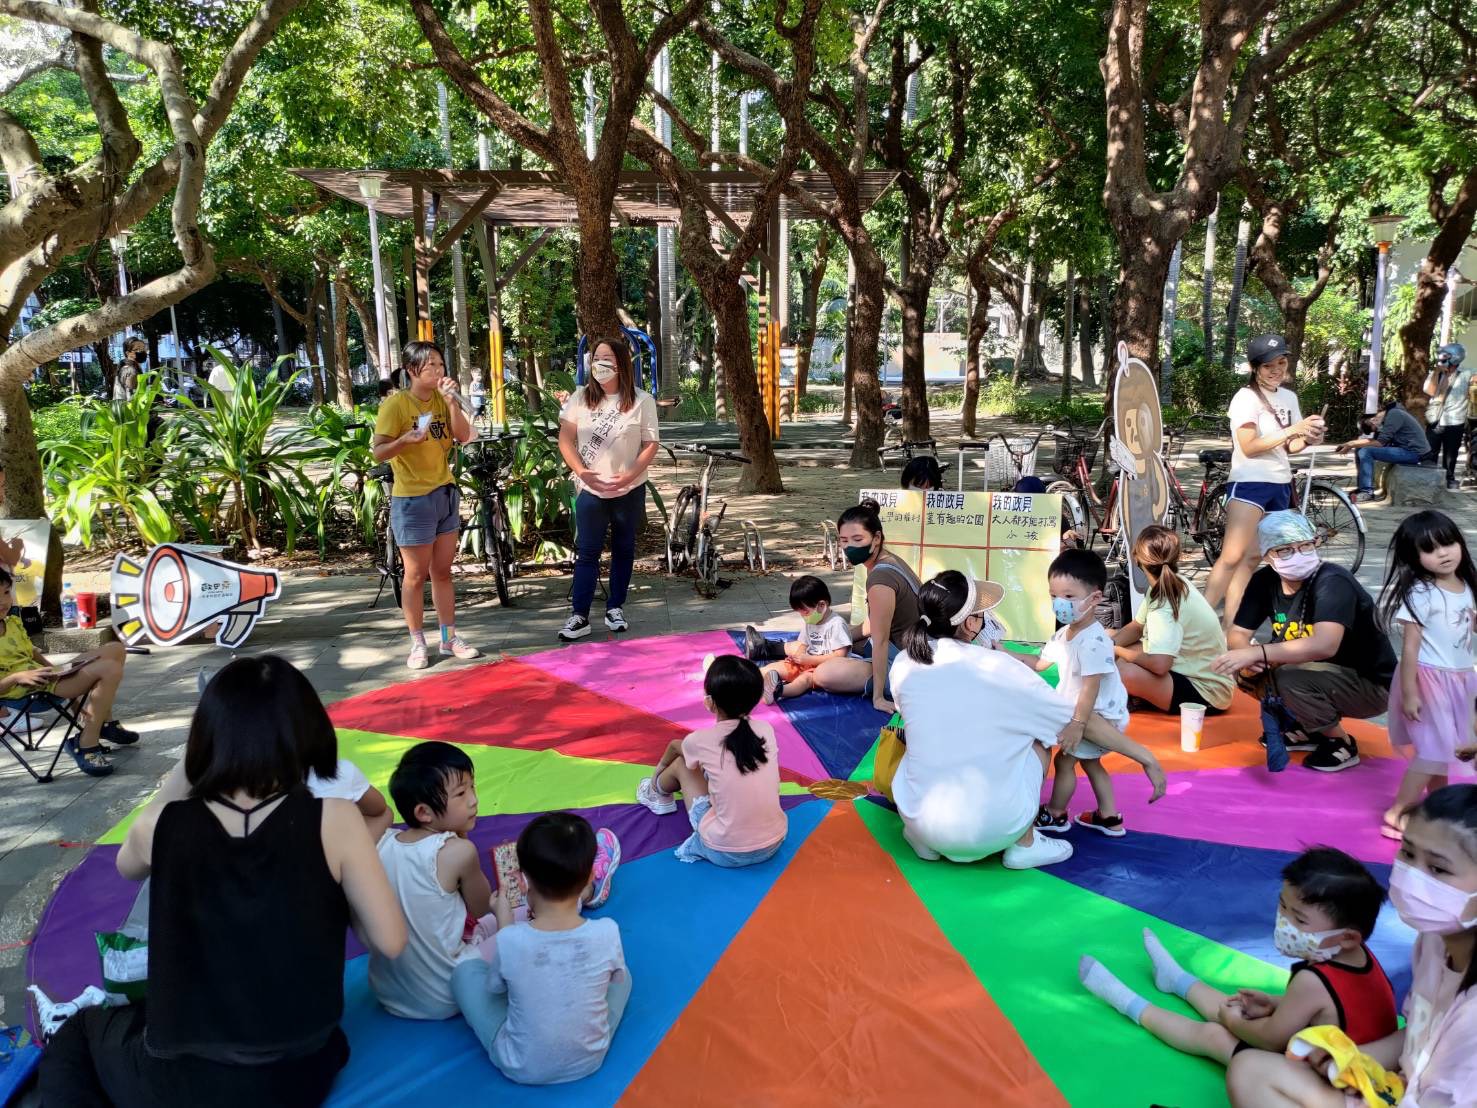 張淑惠關注親子、兒童人權、環境正義議題 辦板橋Play園遊會